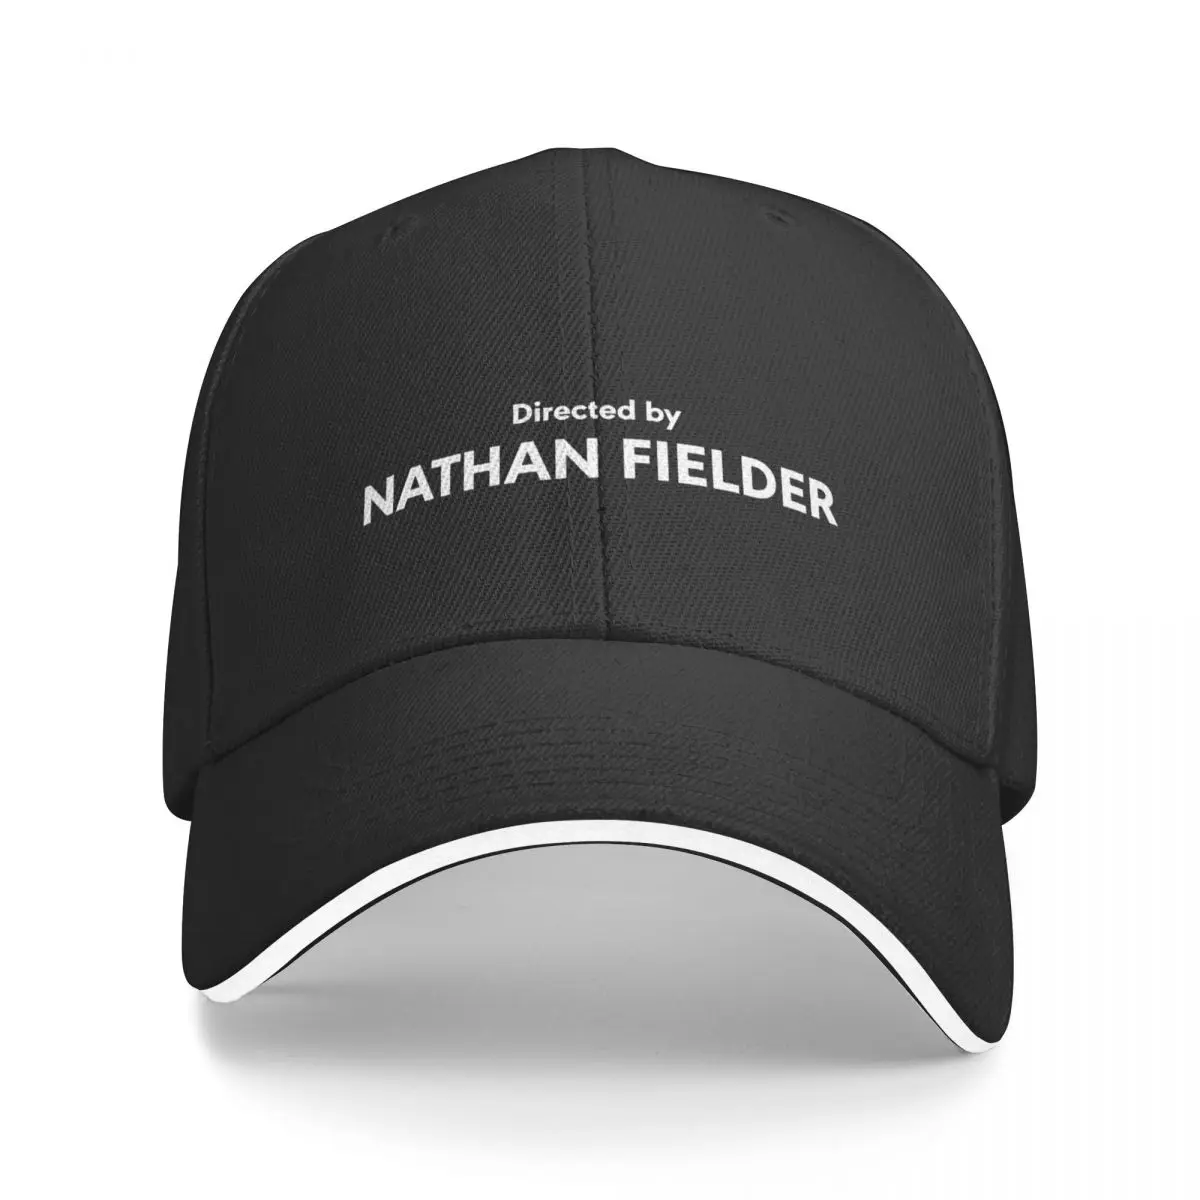 

directed by nathan fielder Baseball Cap Fishing cap Fluffy Hat Golf Cap Women's Hats For The Sun Men's